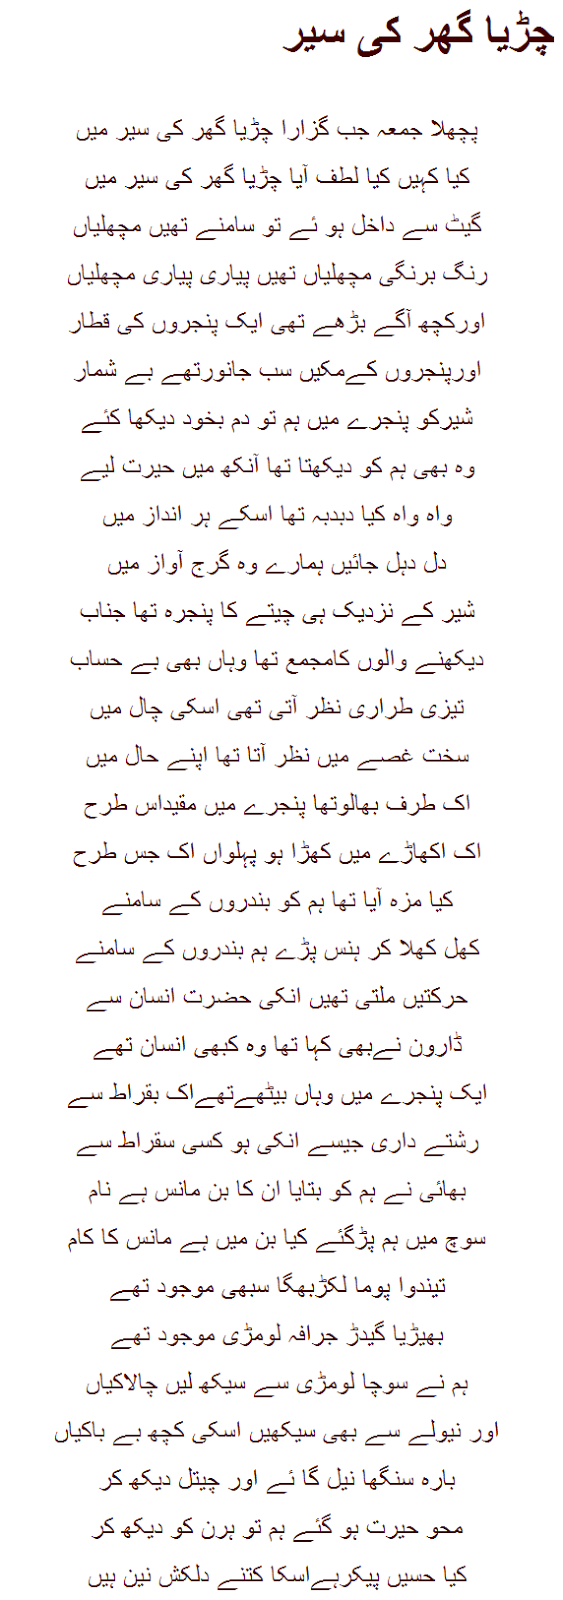 Shah Abdul Latif Essay